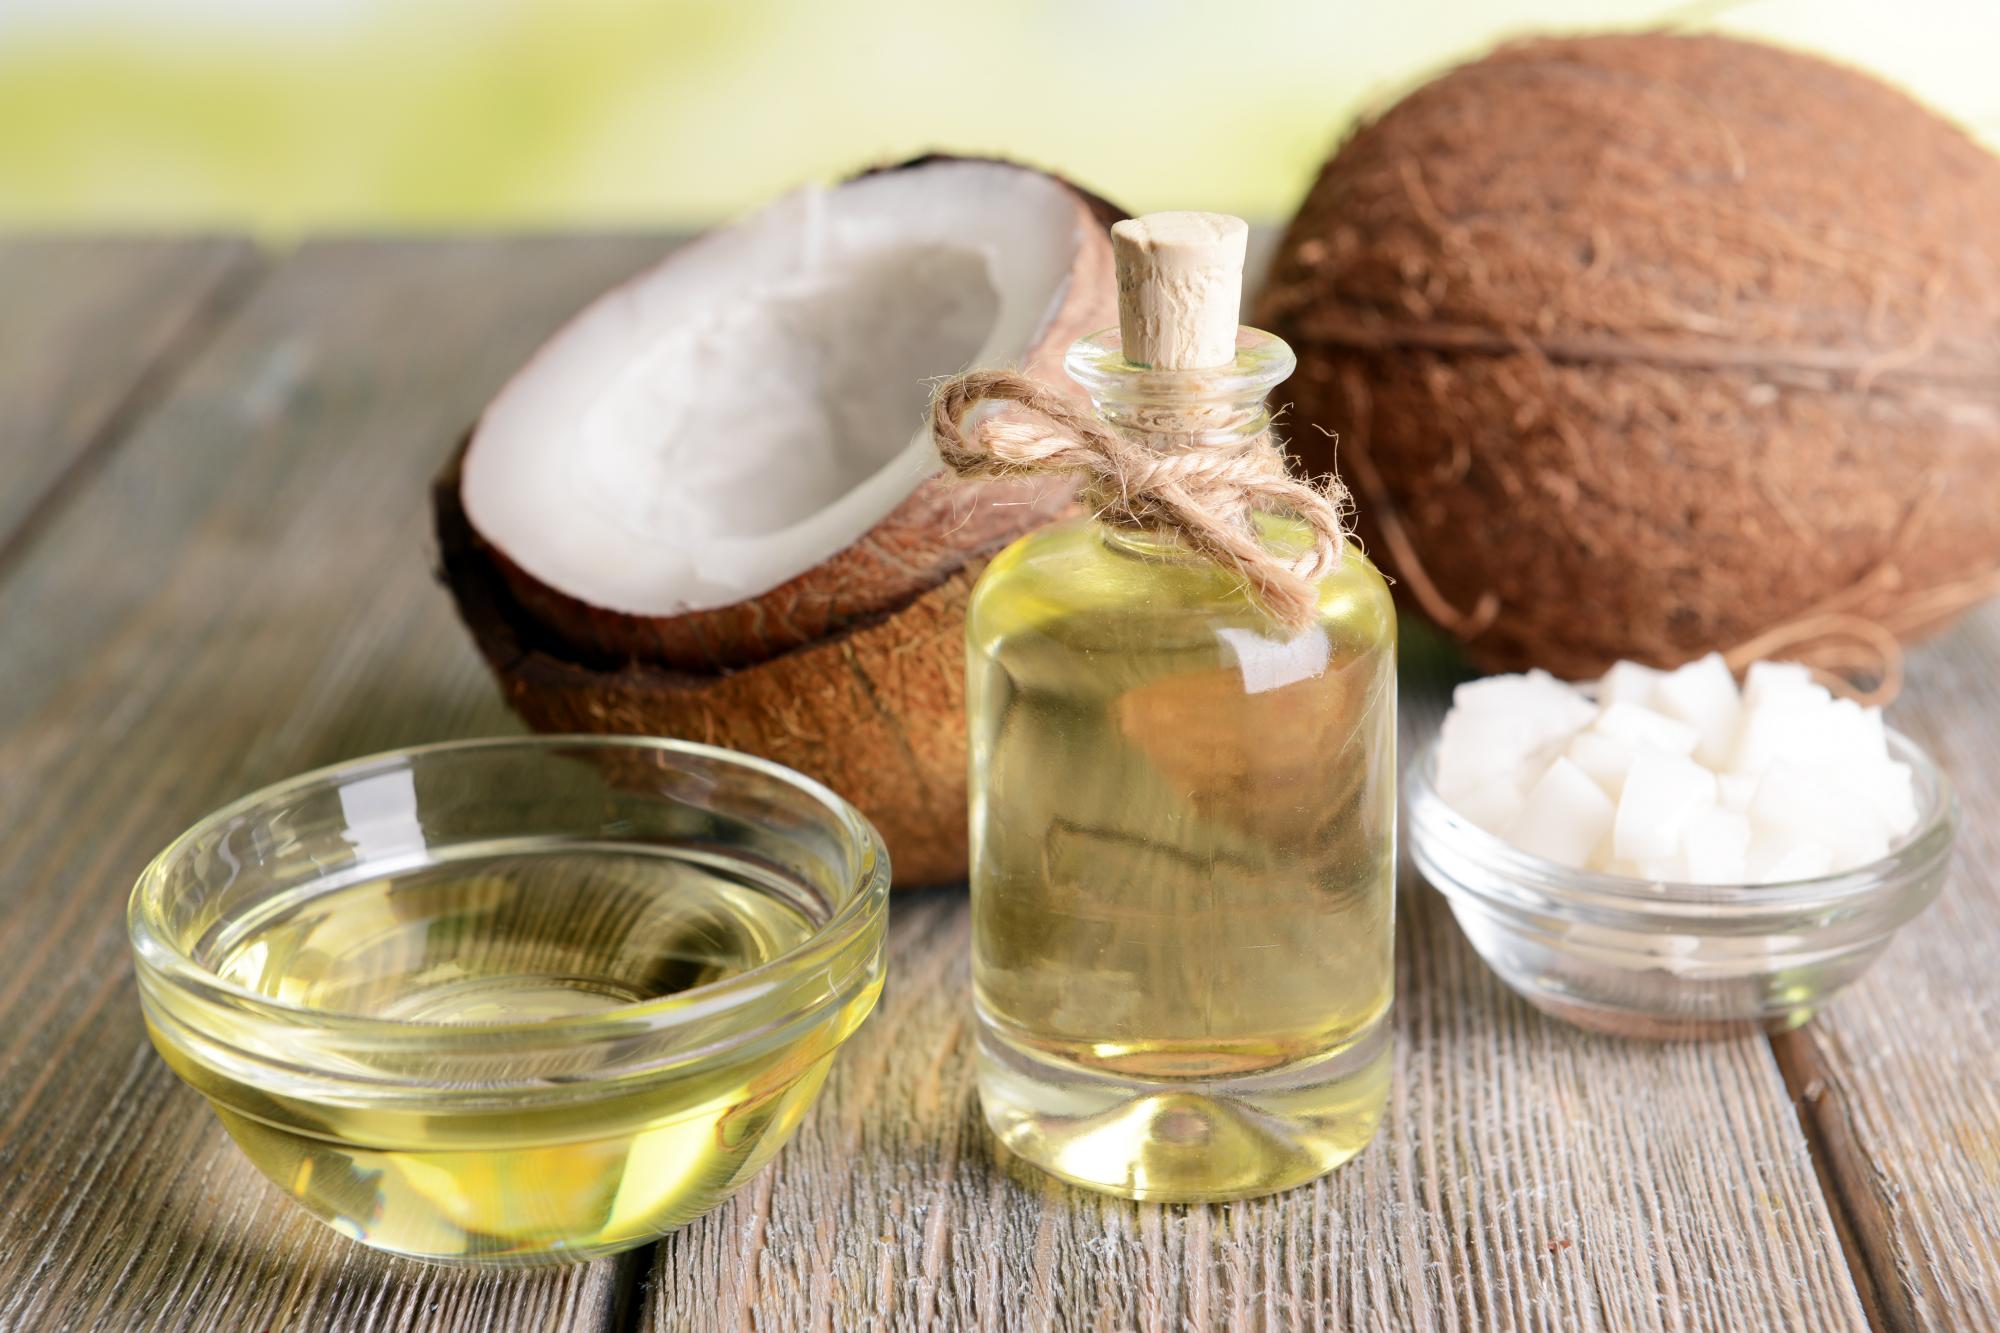 Кокосовое масло для еды: польза и вред, калорийность, применение